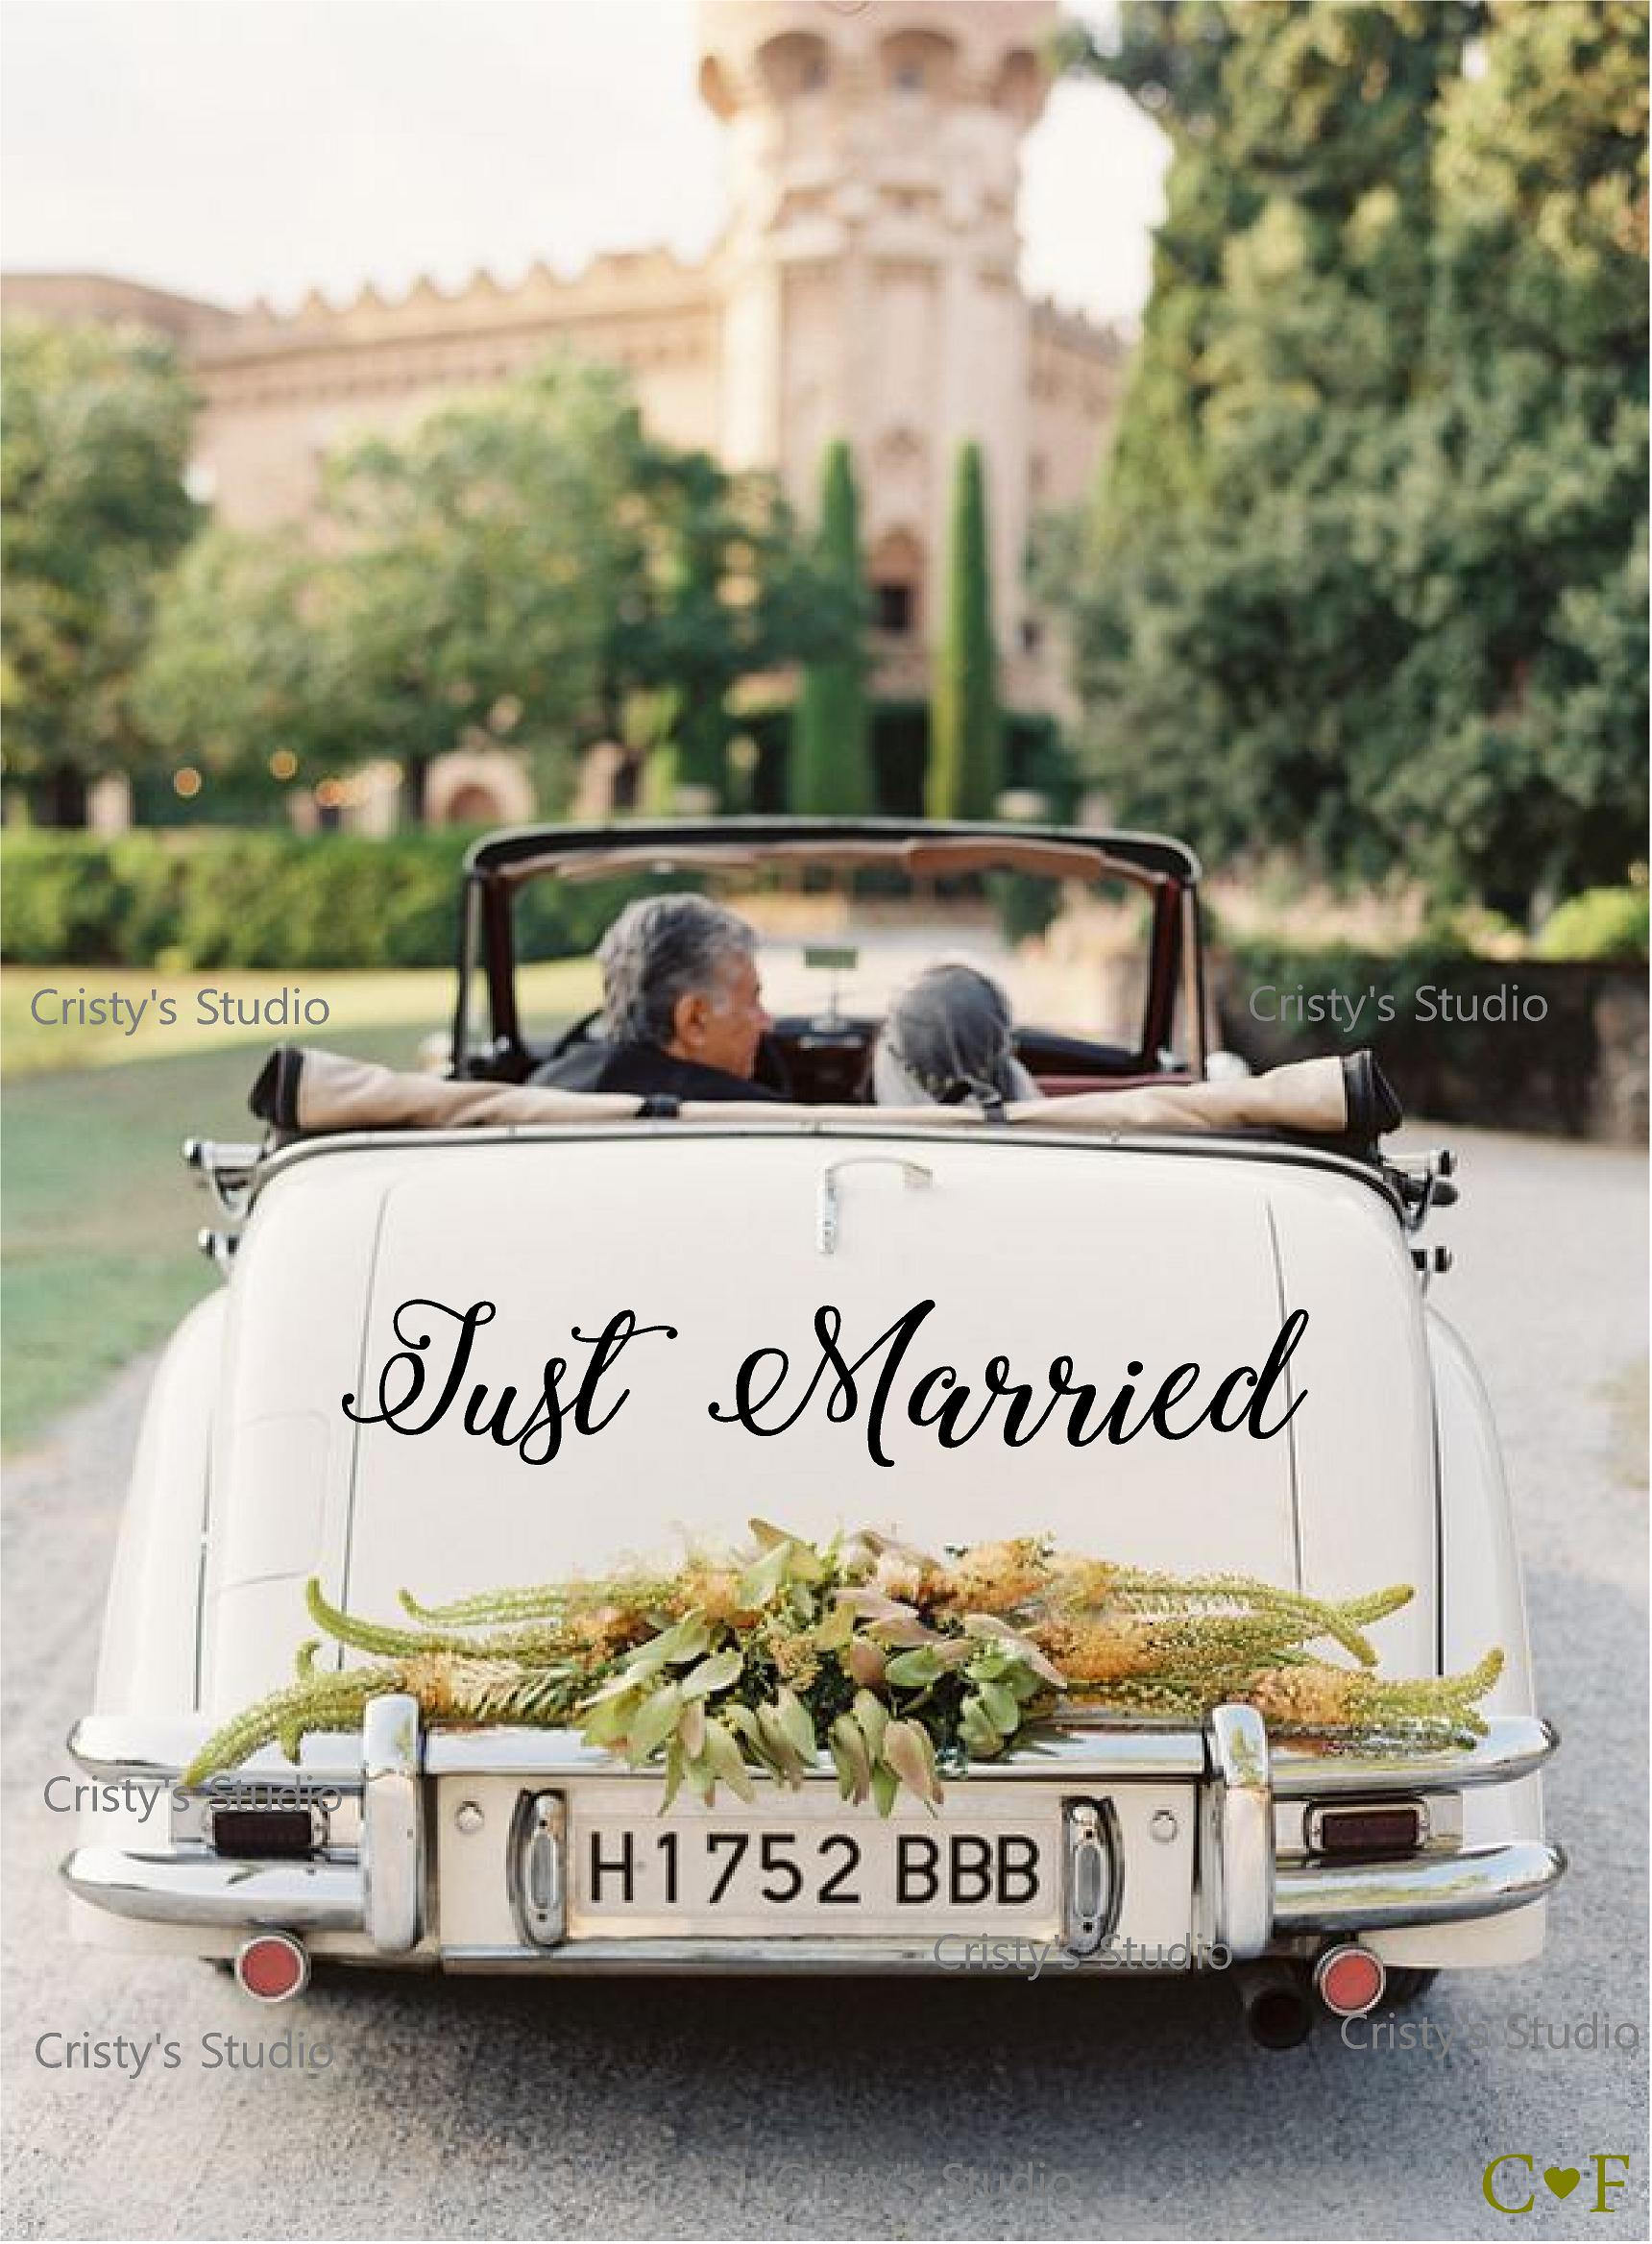 Sticker Just Married date personnalisée date pour voiture Noir ou Blanc Autocollant  Just Married voiture jeunes mariés -  France